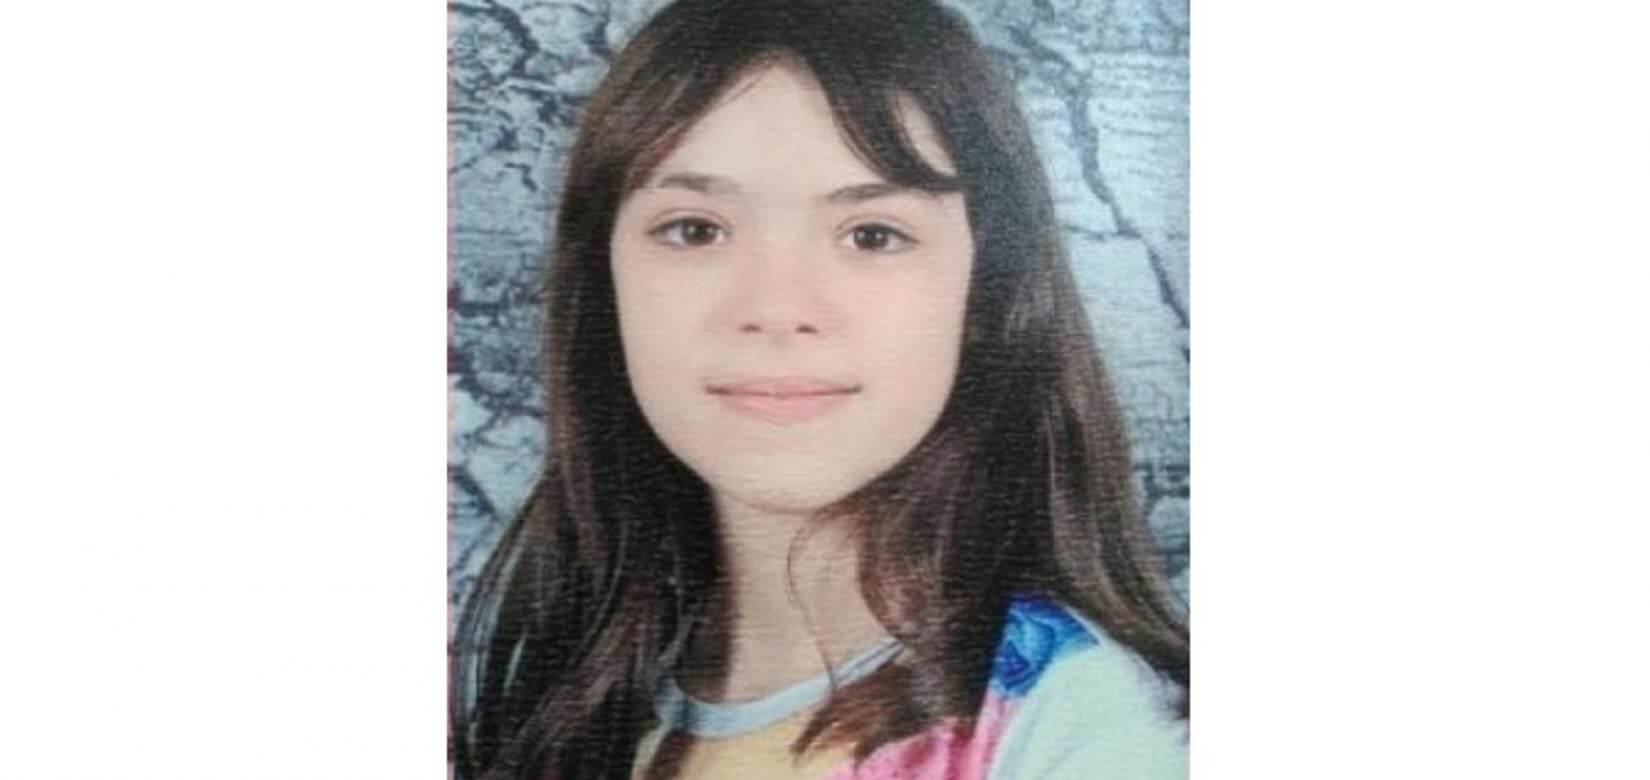 Βρέθηκε η 10χρονη Μαρκέλλα - Που είχαν χαθεί τα ίχνη της από την περασμένη Πέμπτη